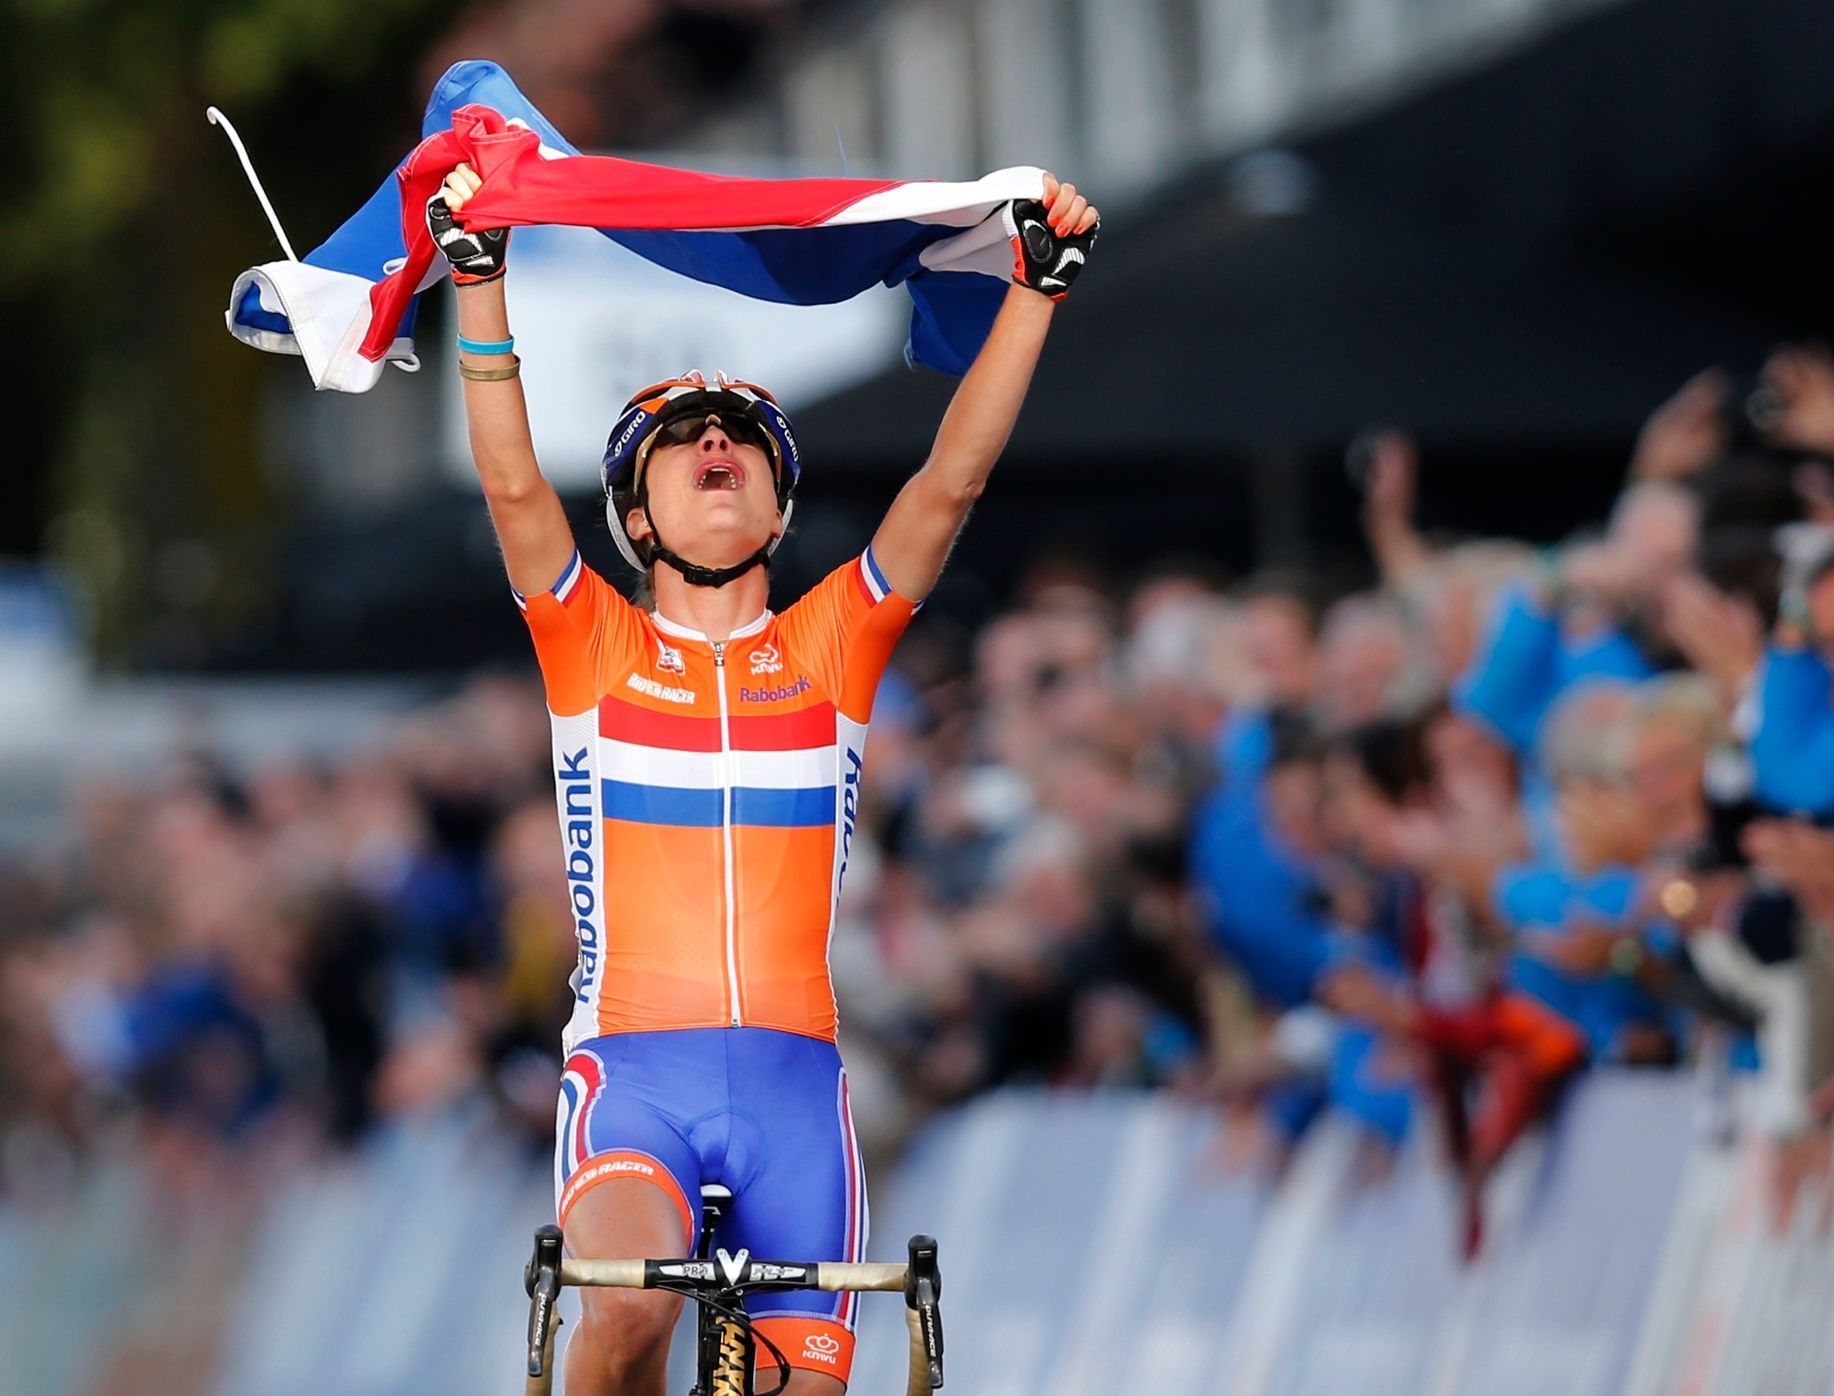 Cyklistka Marianne Vosová z Nizozemska se raduje z titulu mistryně světa